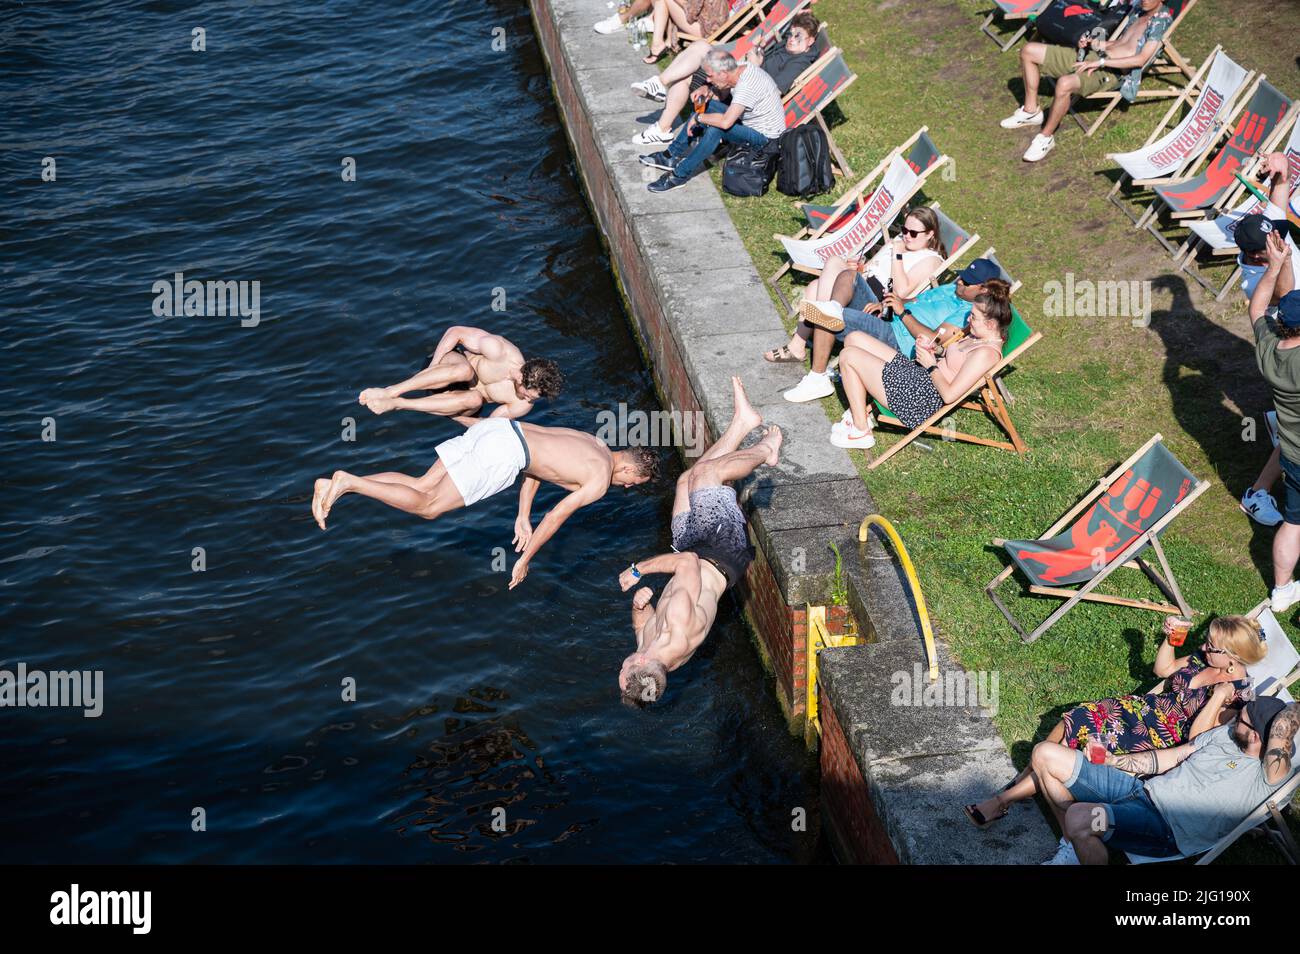 03.07.2022, Berlin, Allemagne, Europe - trois jeunes hommes sautent de la rive du Ludwig-Erhard-Ufer dans la rivière Spree, lors d'une chaude journée d'été. Banque D'Images